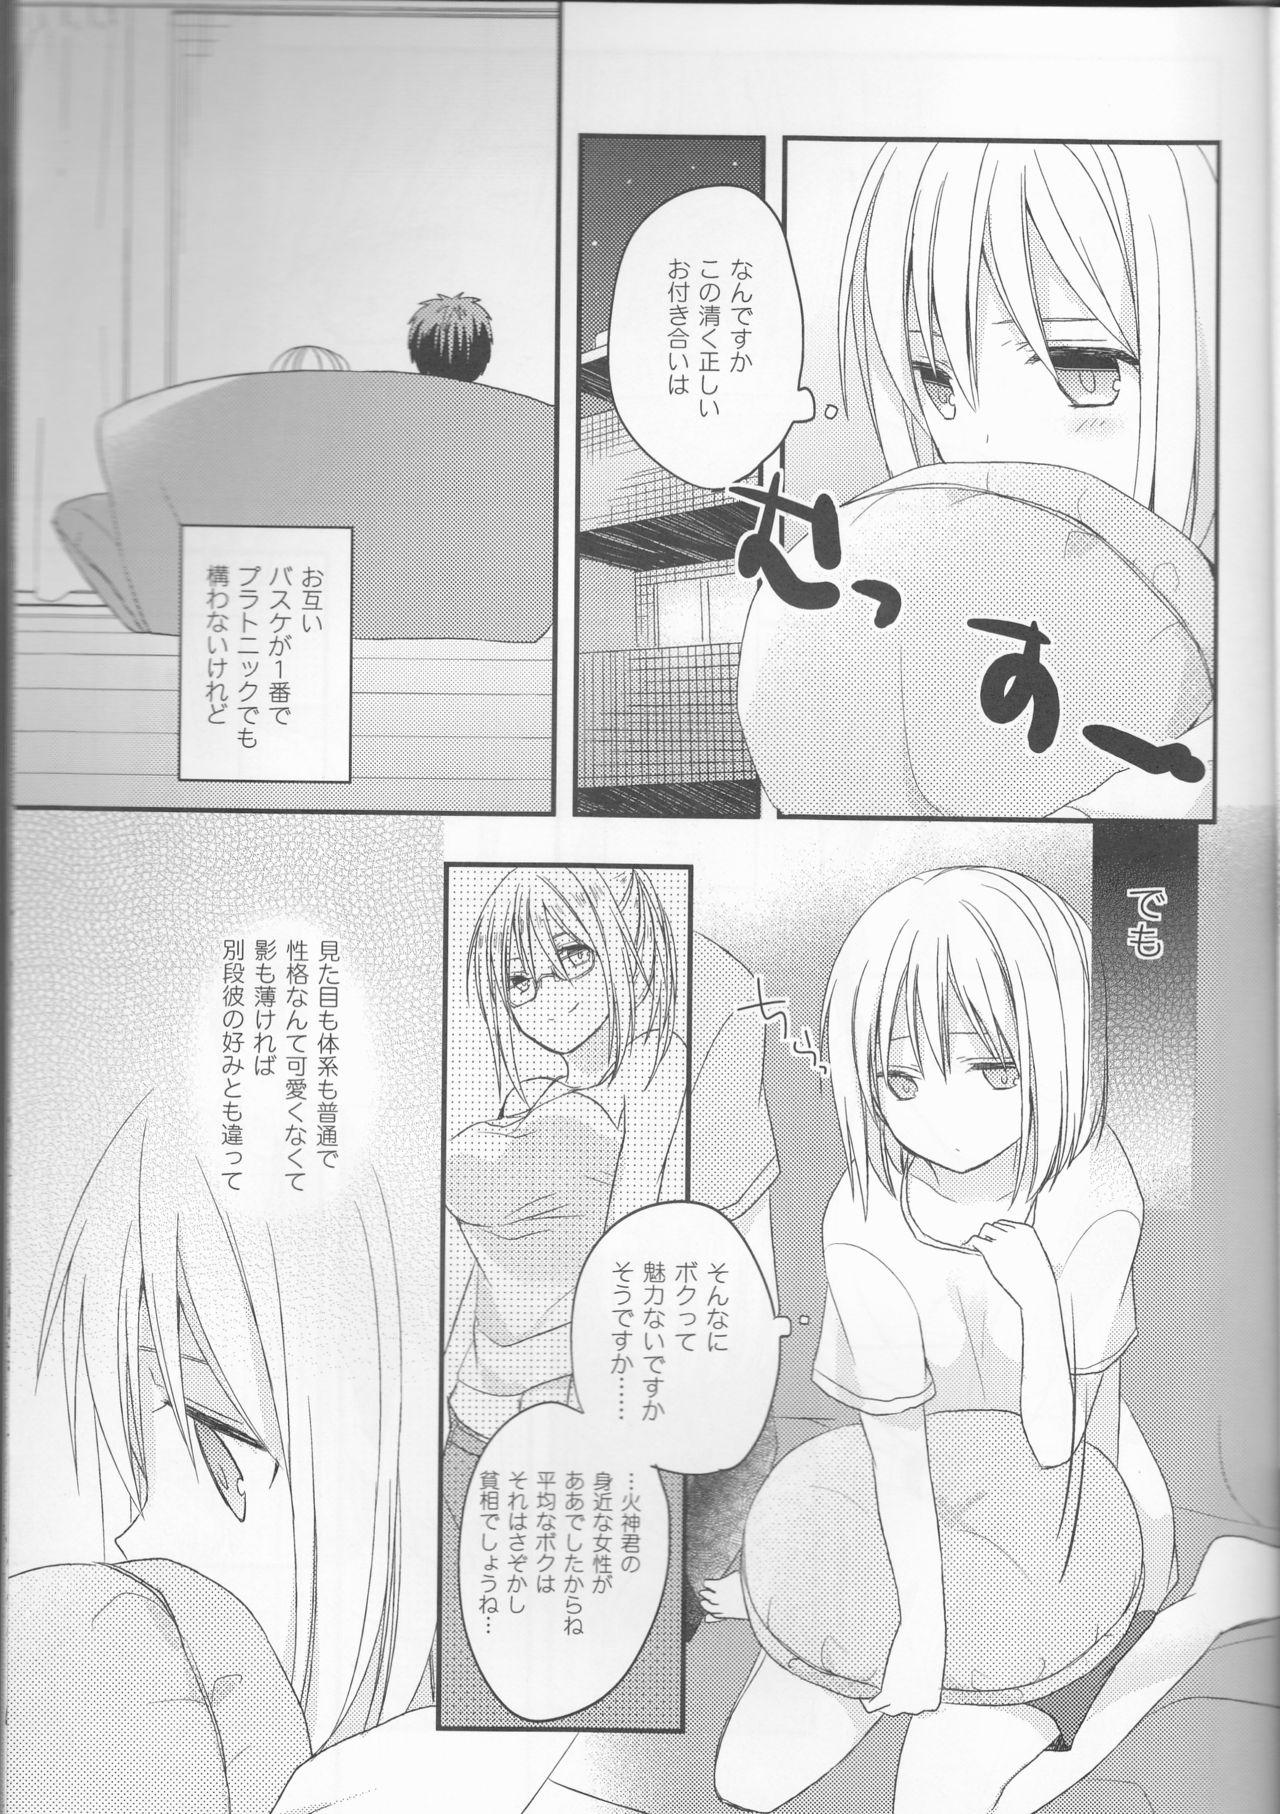 Ass Lick Kimi ni Shooting Star - Kuroko no basuke Nerd - Page 4